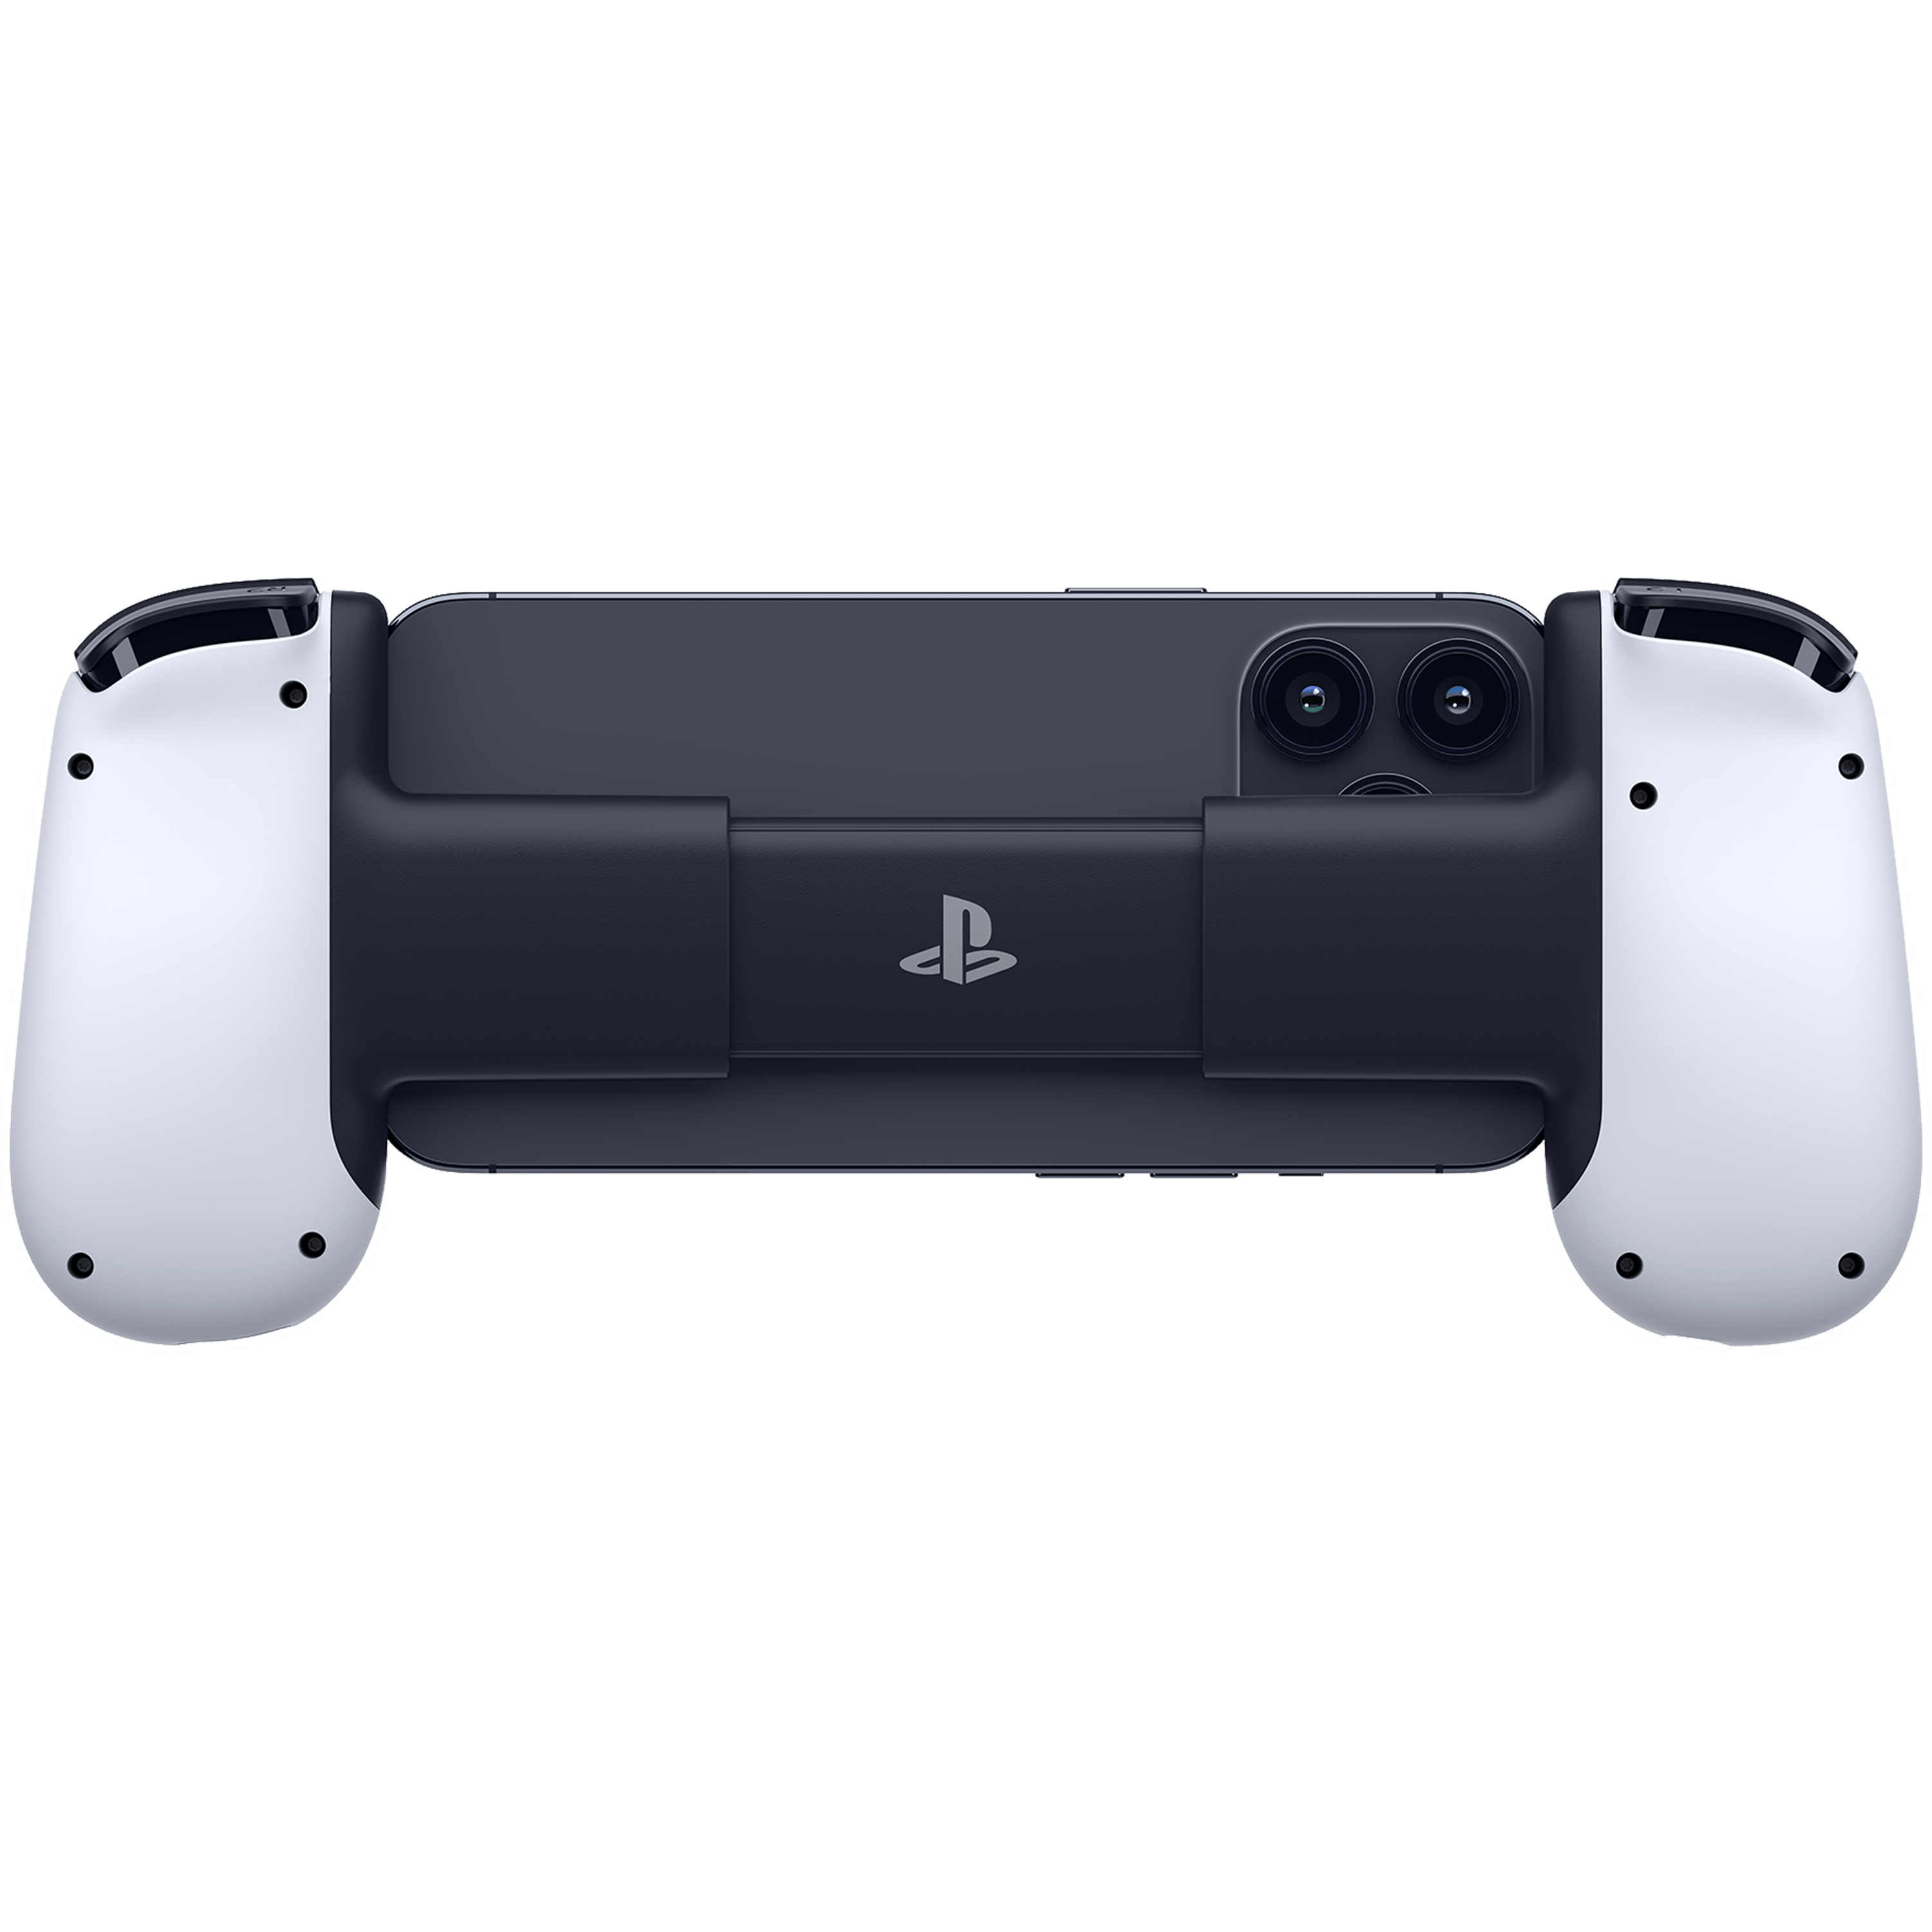 Backbone One - Playstation Edition